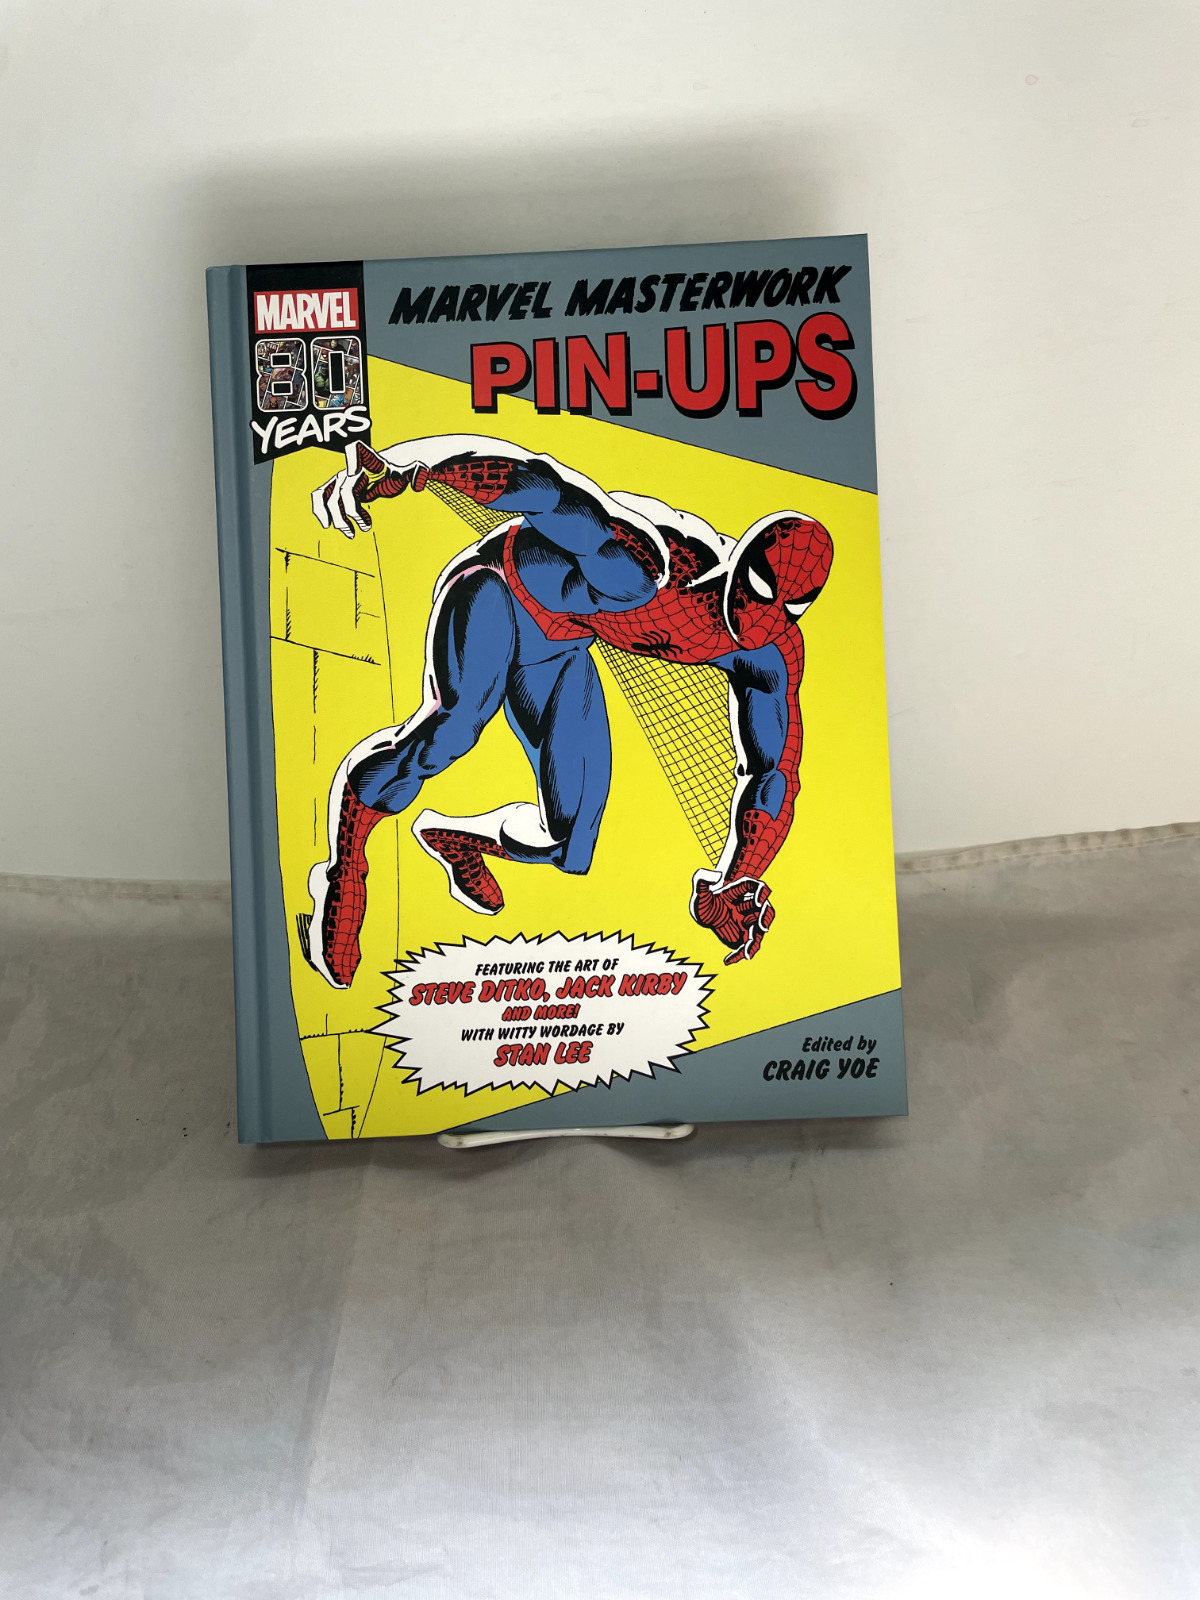 Marvel Masterworks Pin-ups (IDW Publishing, July 2019)